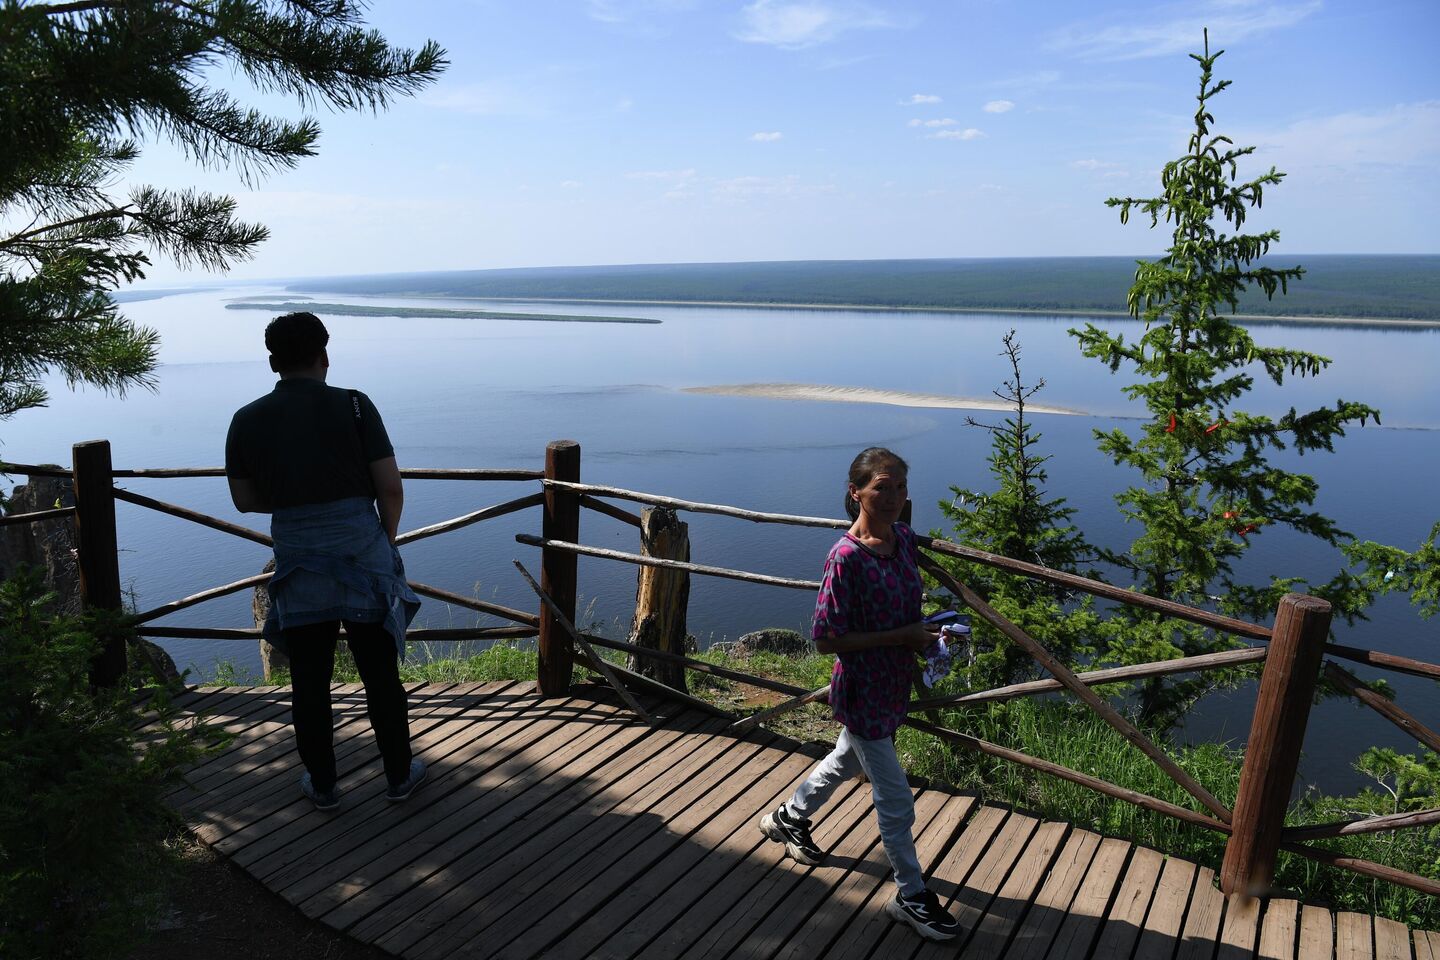 Туристы на реке Лене в национальном парке Ленские столбы в Якутии